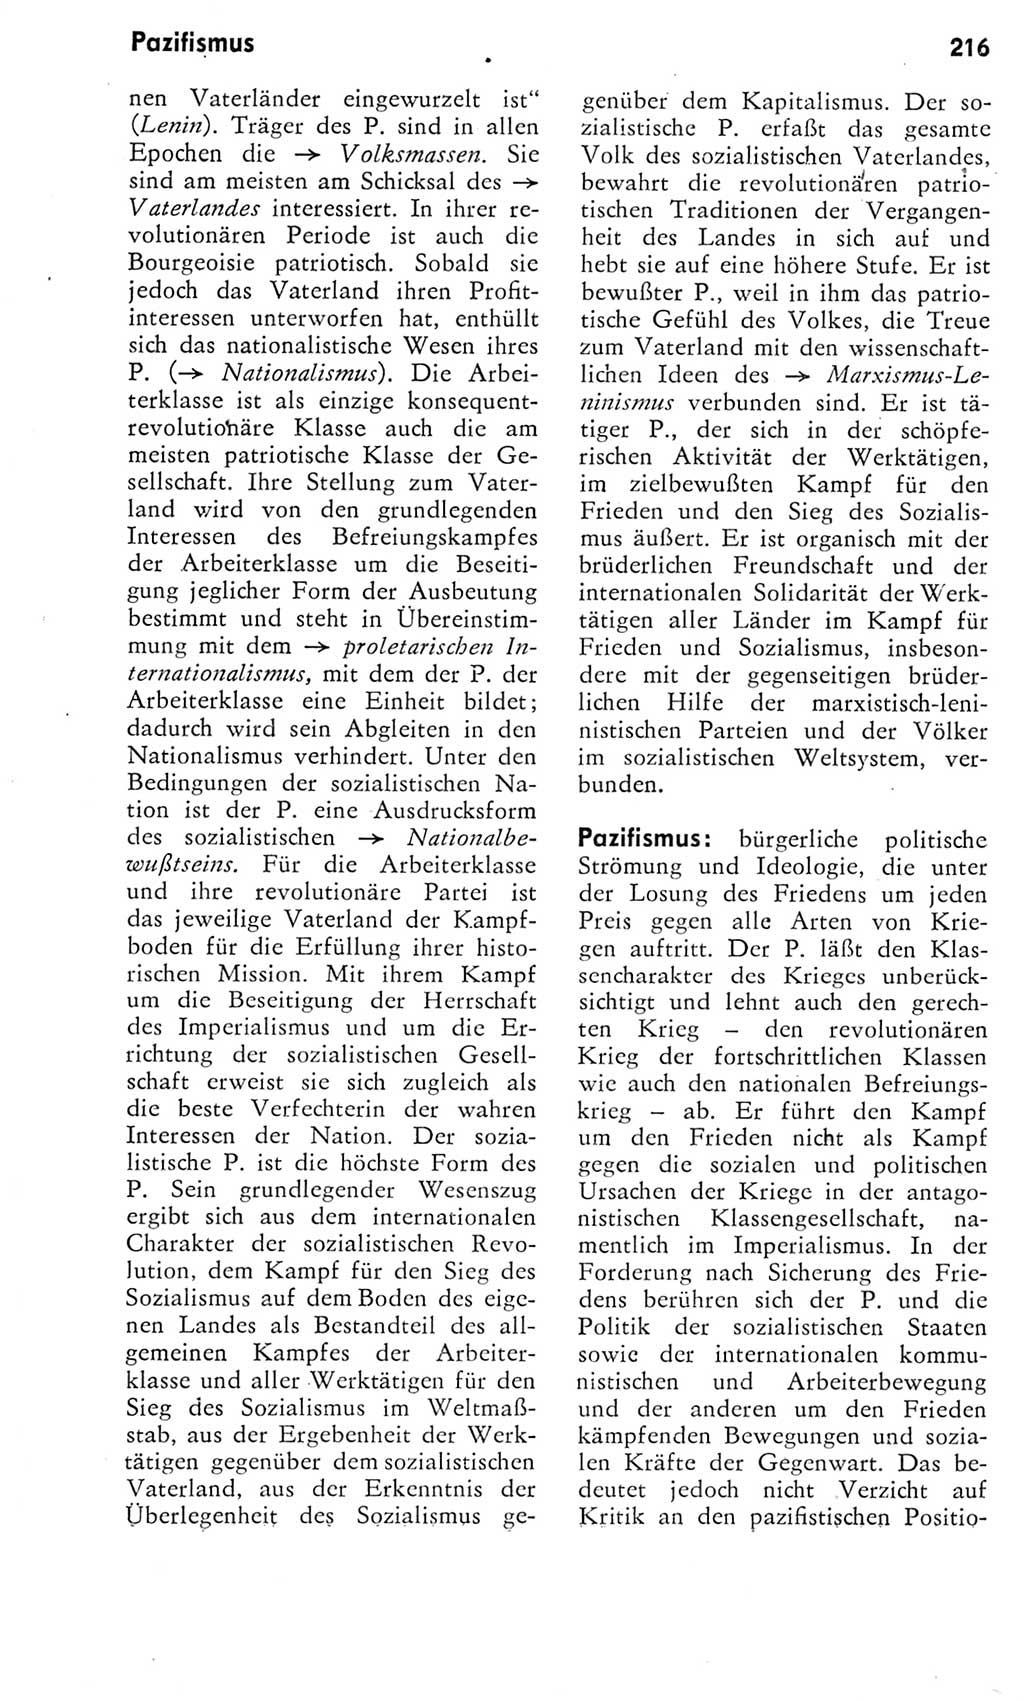 Kleines Wörterbuch der marxistisch-leninistischen Philosophie [Deutsche Demokratische Republik (DDR)] 1975, Seite 216 (Kl. Wb. ML Phil. DDR 1975, S. 216)